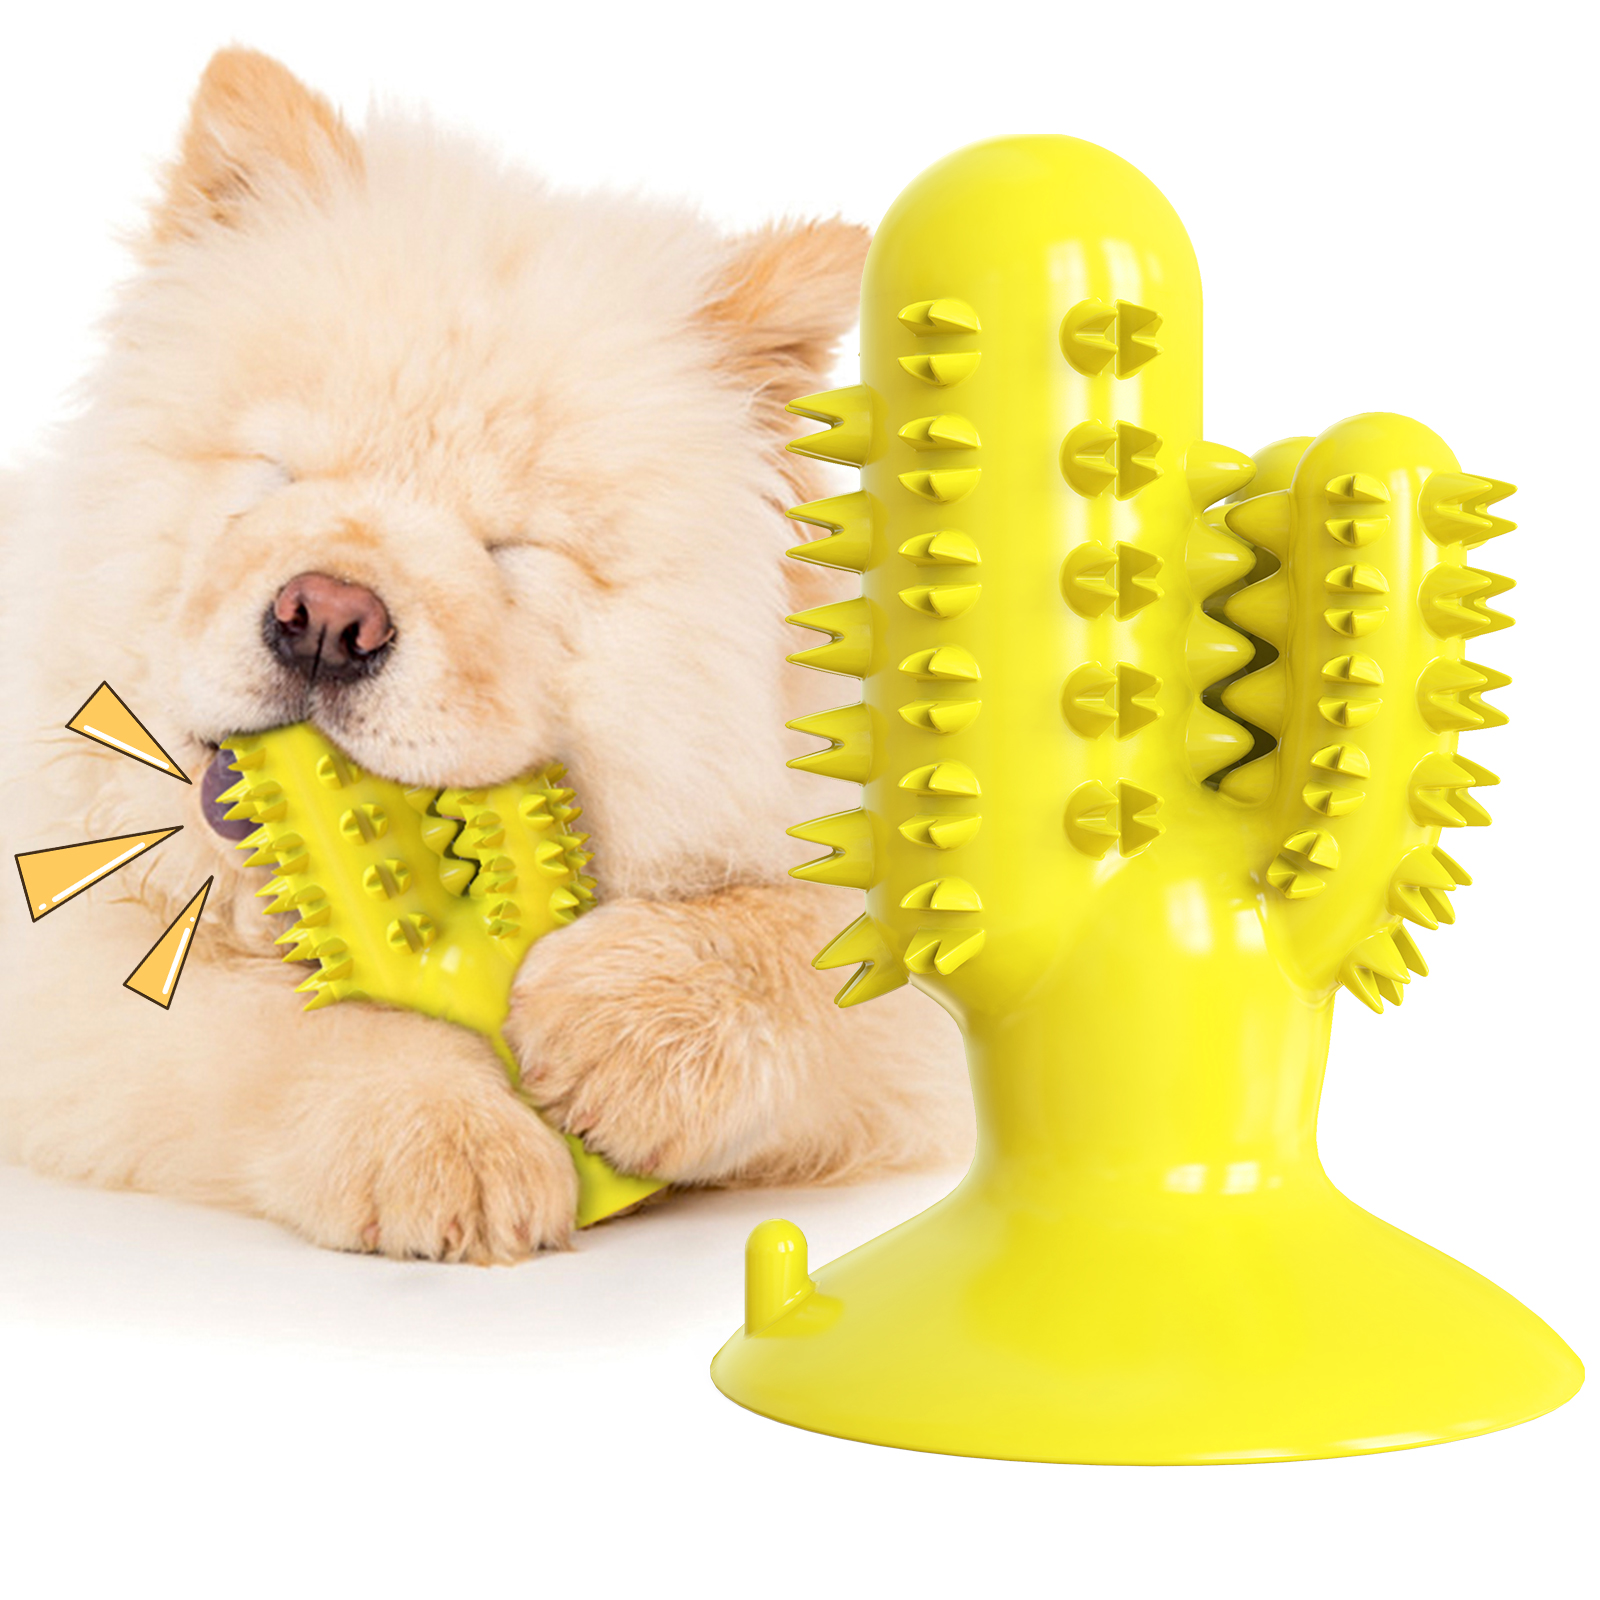 2020 ดีไซน์ใหม่รูปกระบองเพชรสุนัขส่งเสียงดังเอี้ยดแปรงสีฟันดูดถ้วยลูกสุนัขเคี้ยวของเล่น